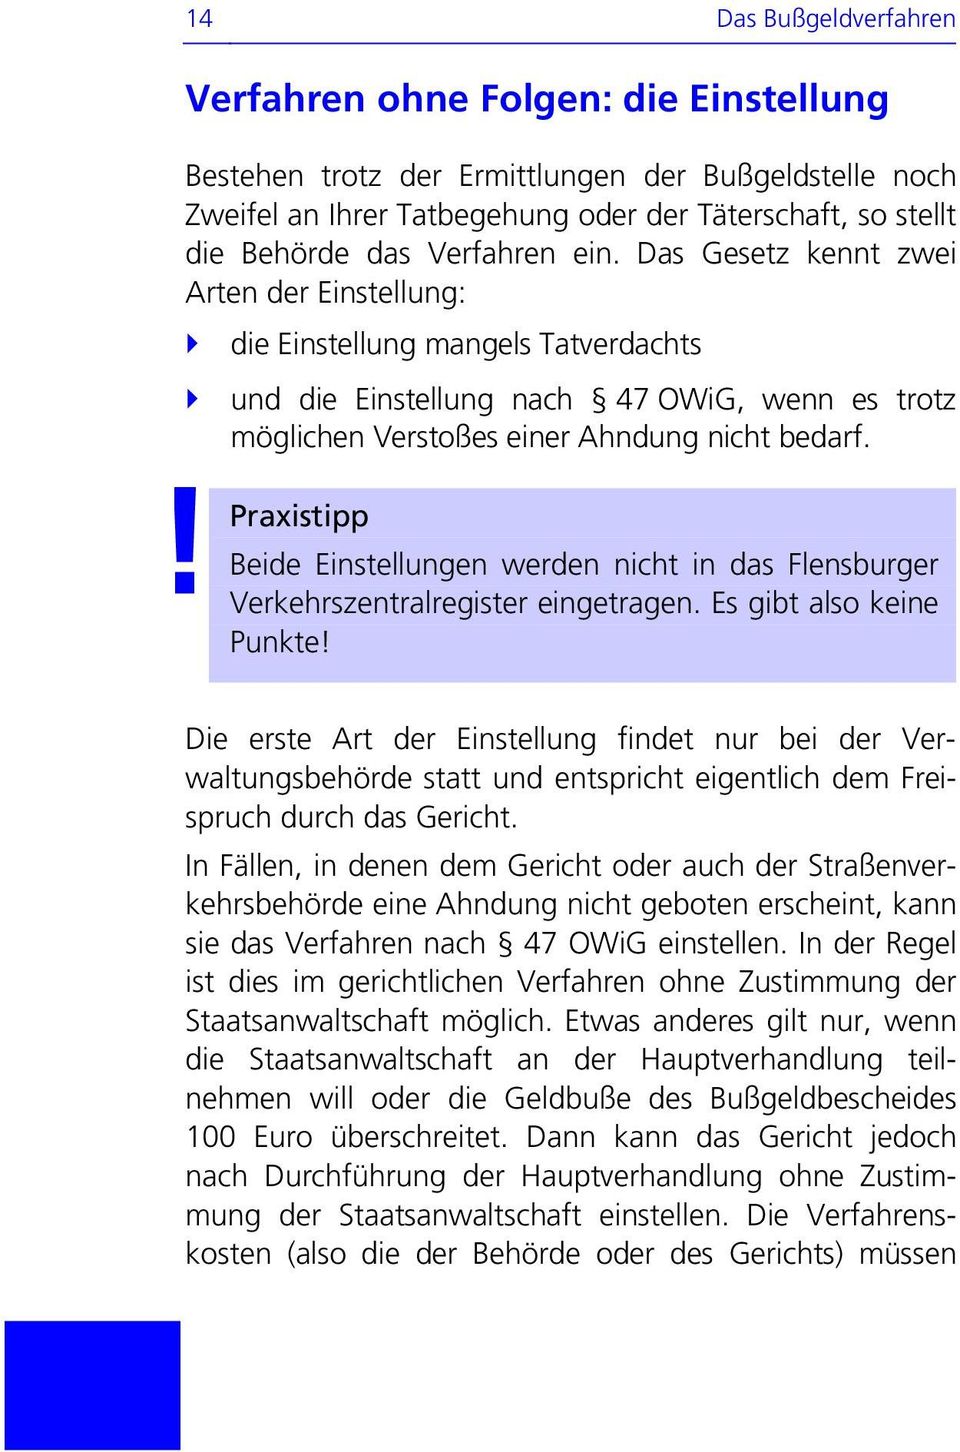 Beide Einstellungen werden nicht in das Flensburger Verkehrszentralregister eingetragen. Es gibt also keine Punkte!